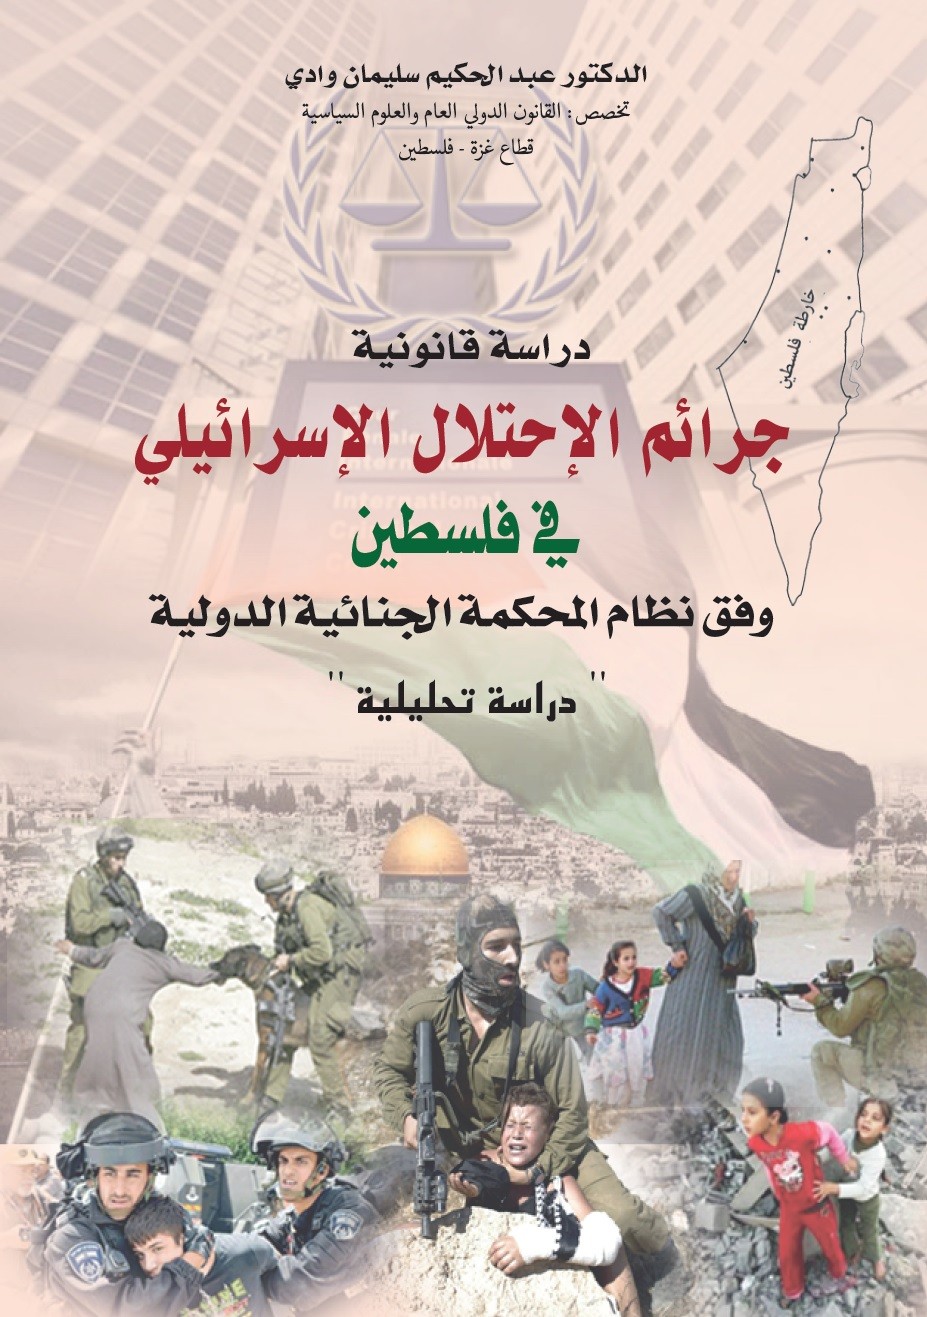 كتاب يرصد جرائم الاحتلال الإسرائيلي في فلسطين